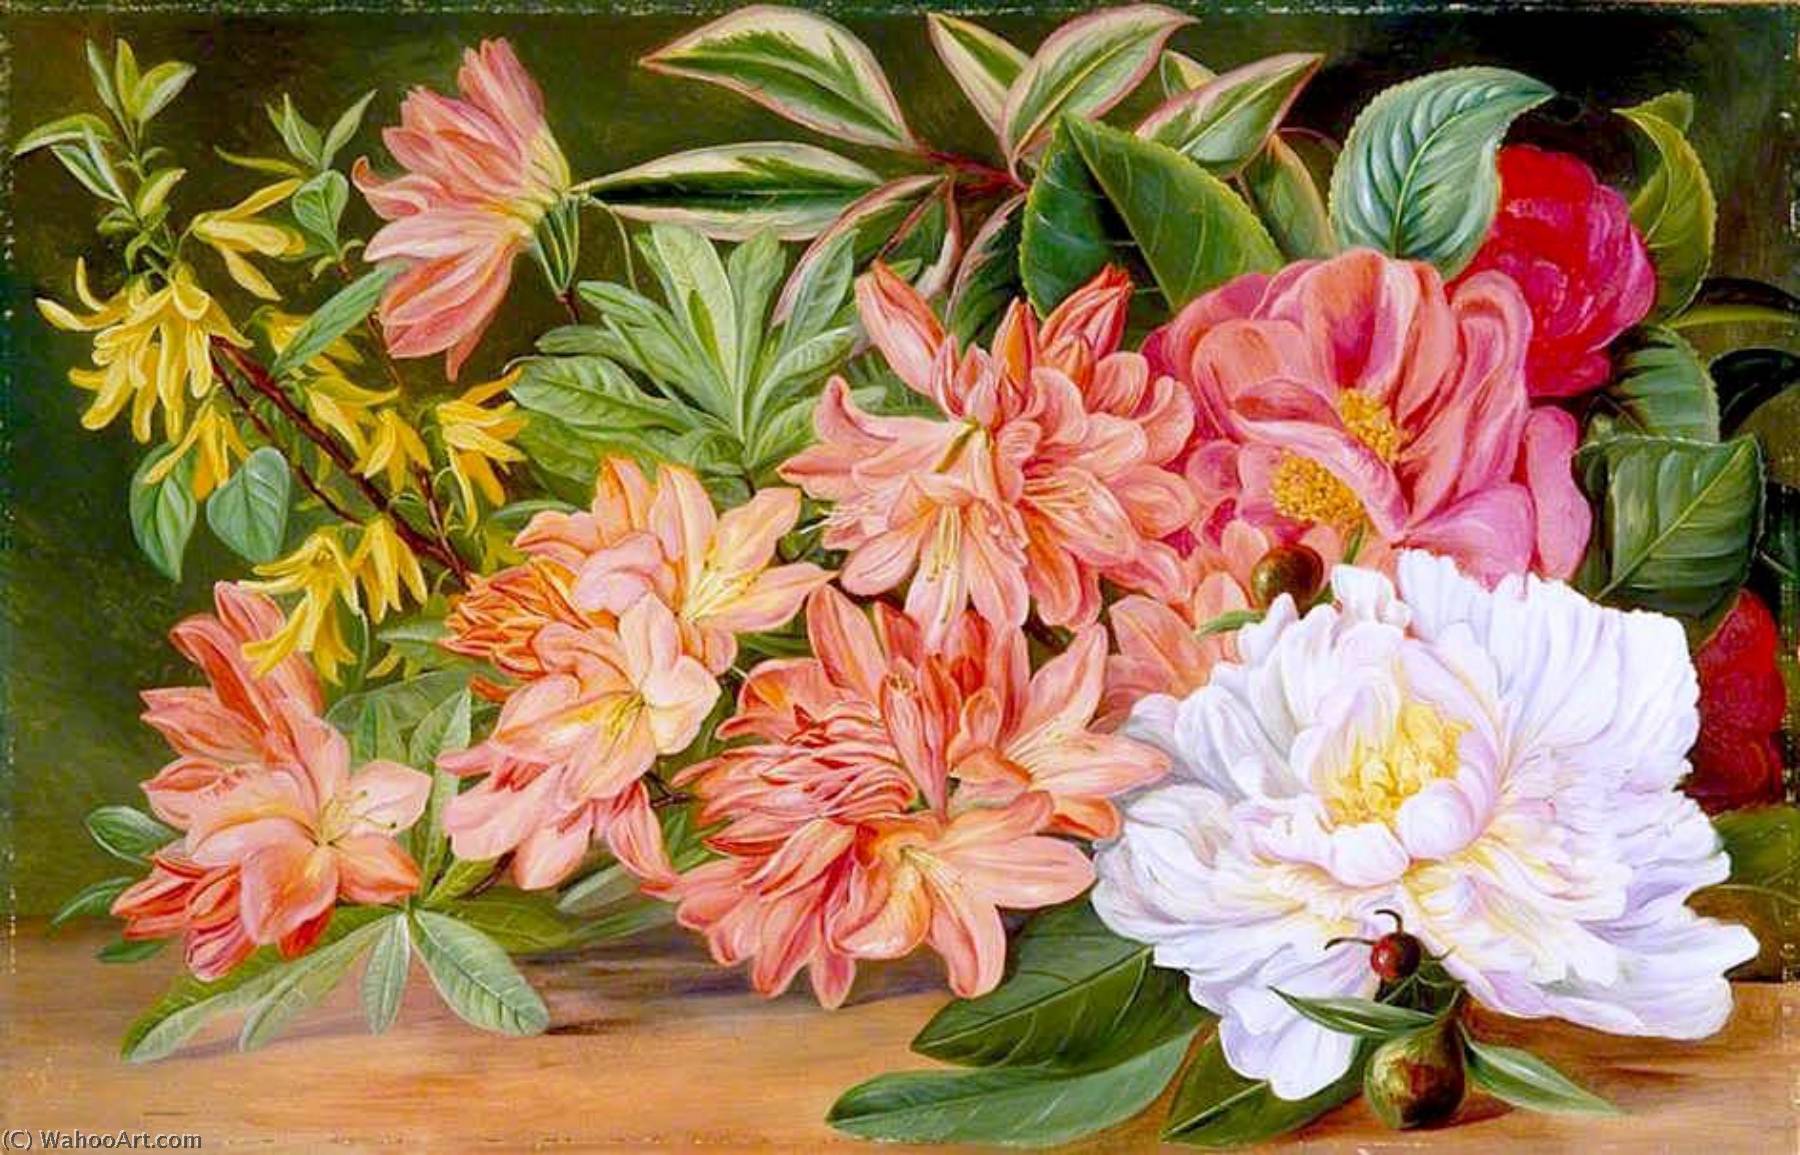 WikiOO.org - אנציקלופדיה לאמנויות יפות - ציור, יצירות אמנות Marianne North - Japanese Flowers